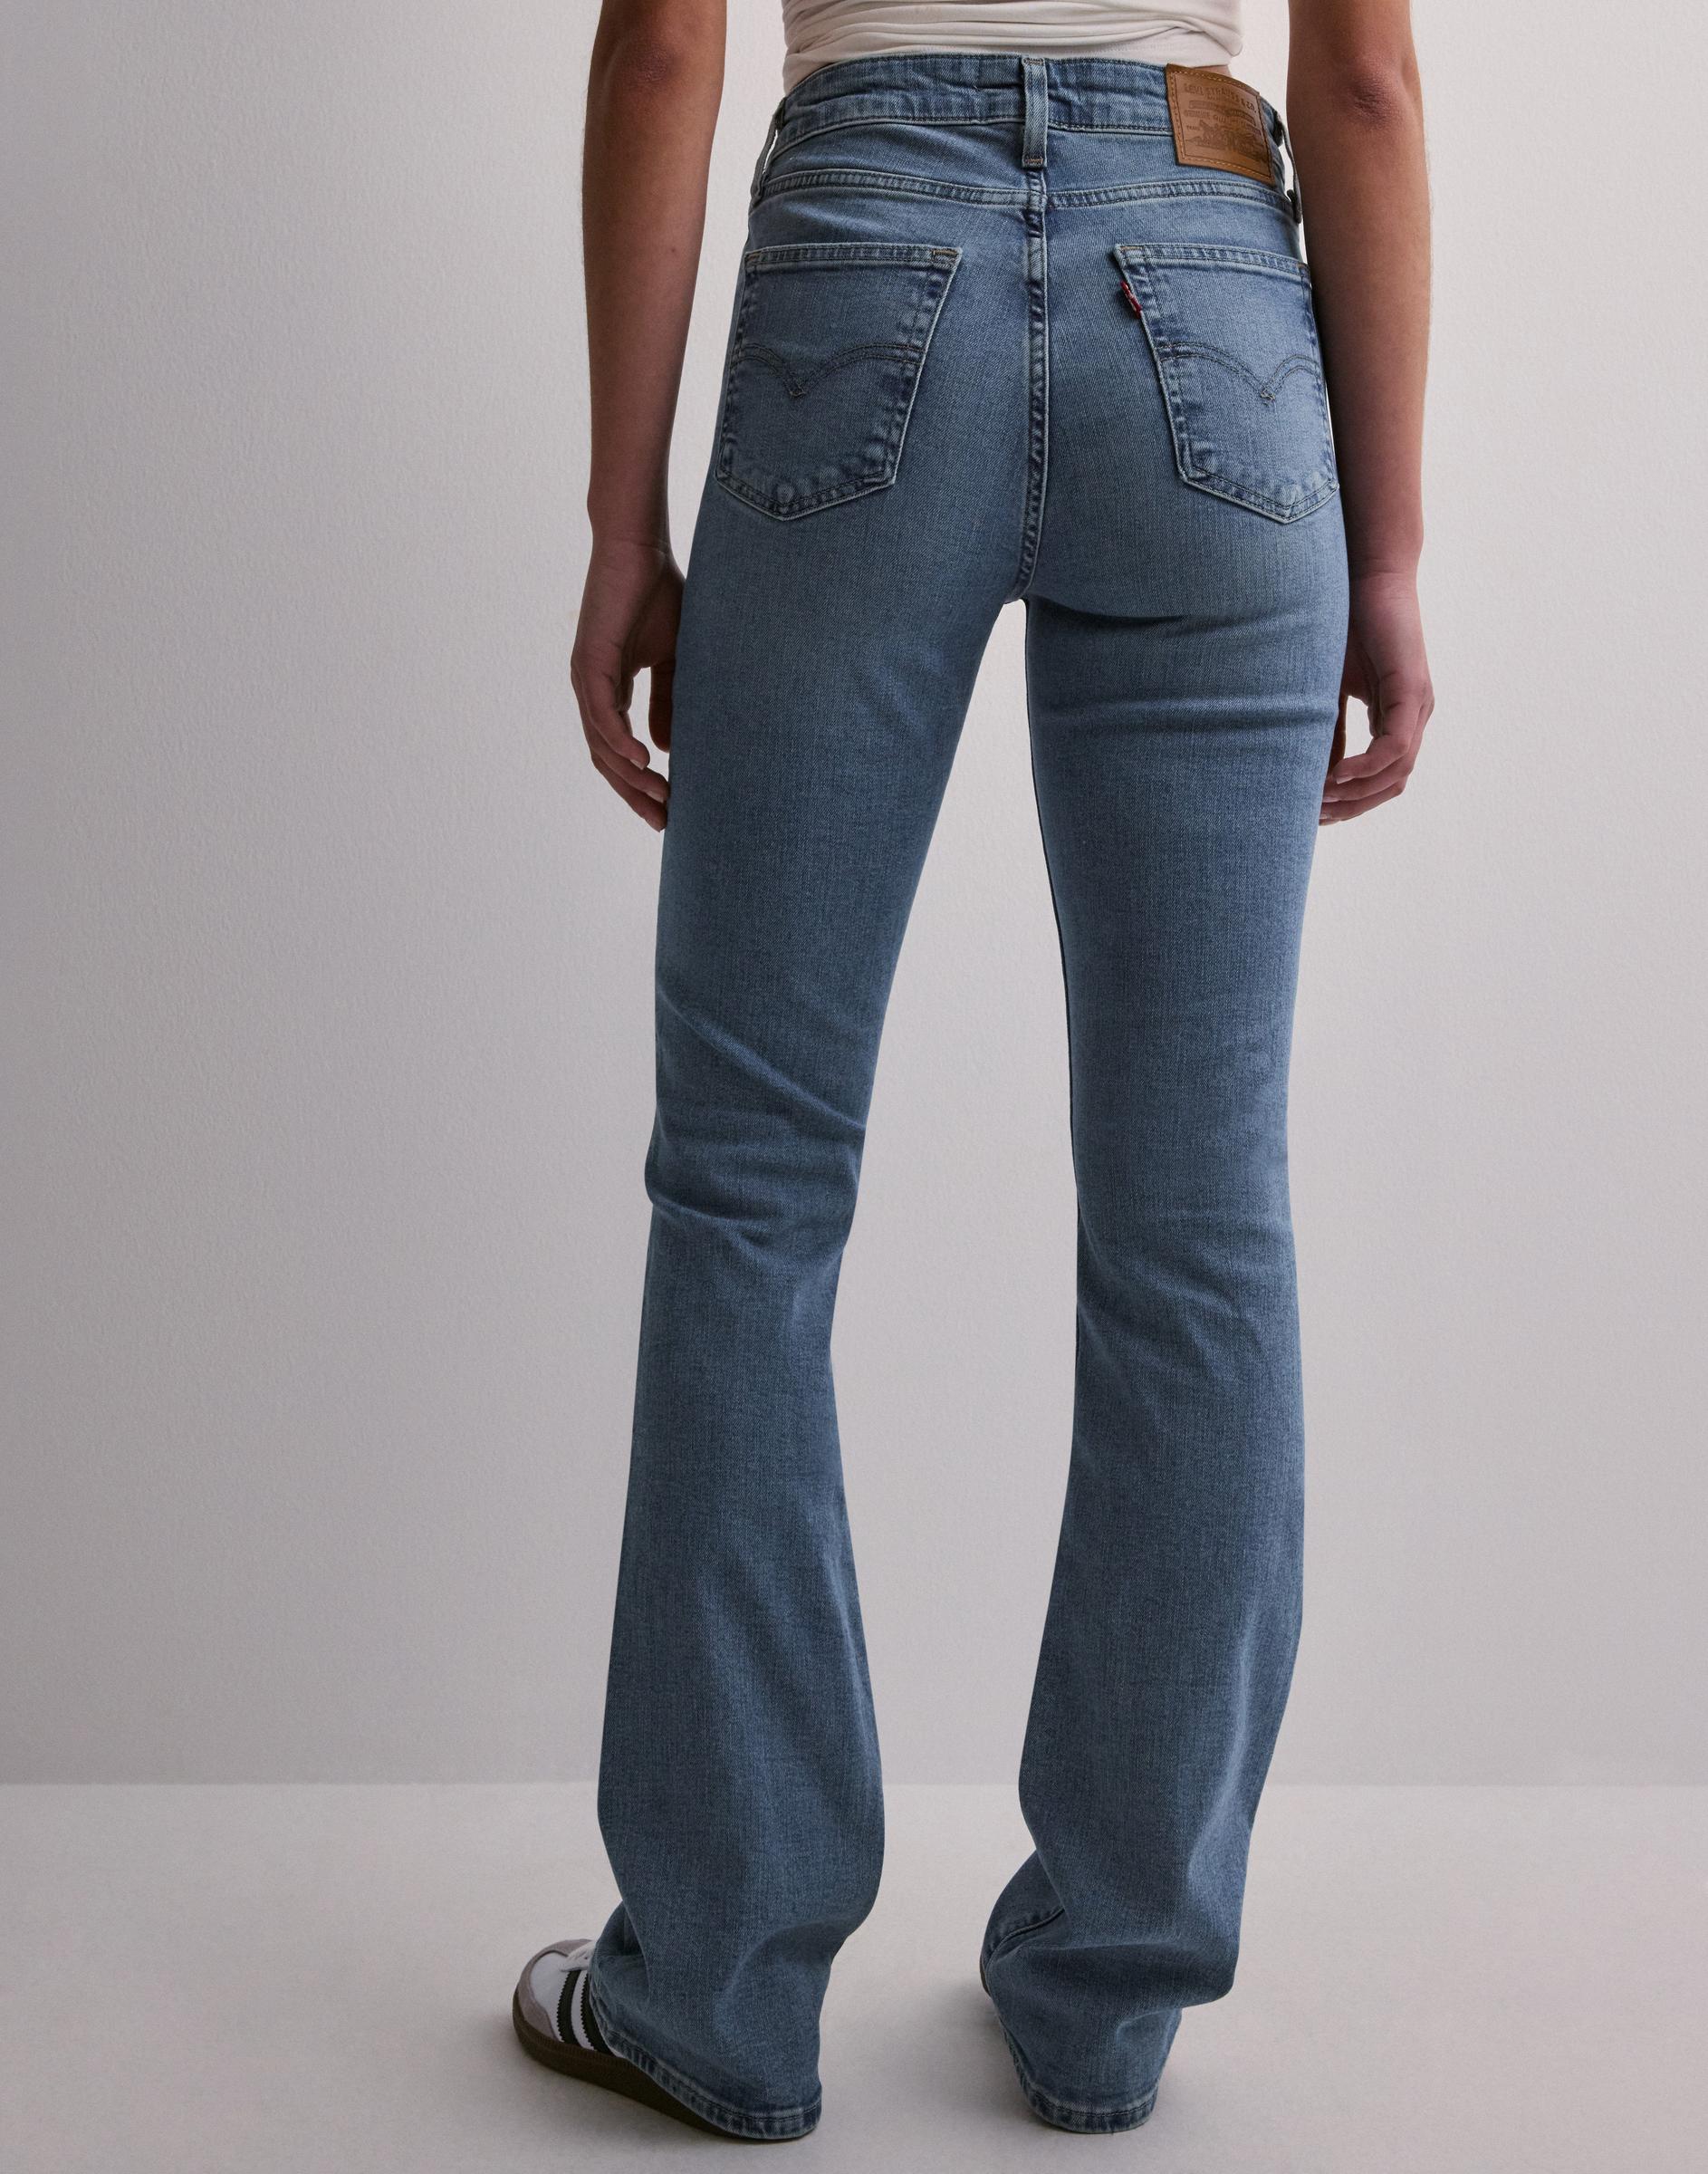 niebieskie jeansowe spodnie BOOTCUT